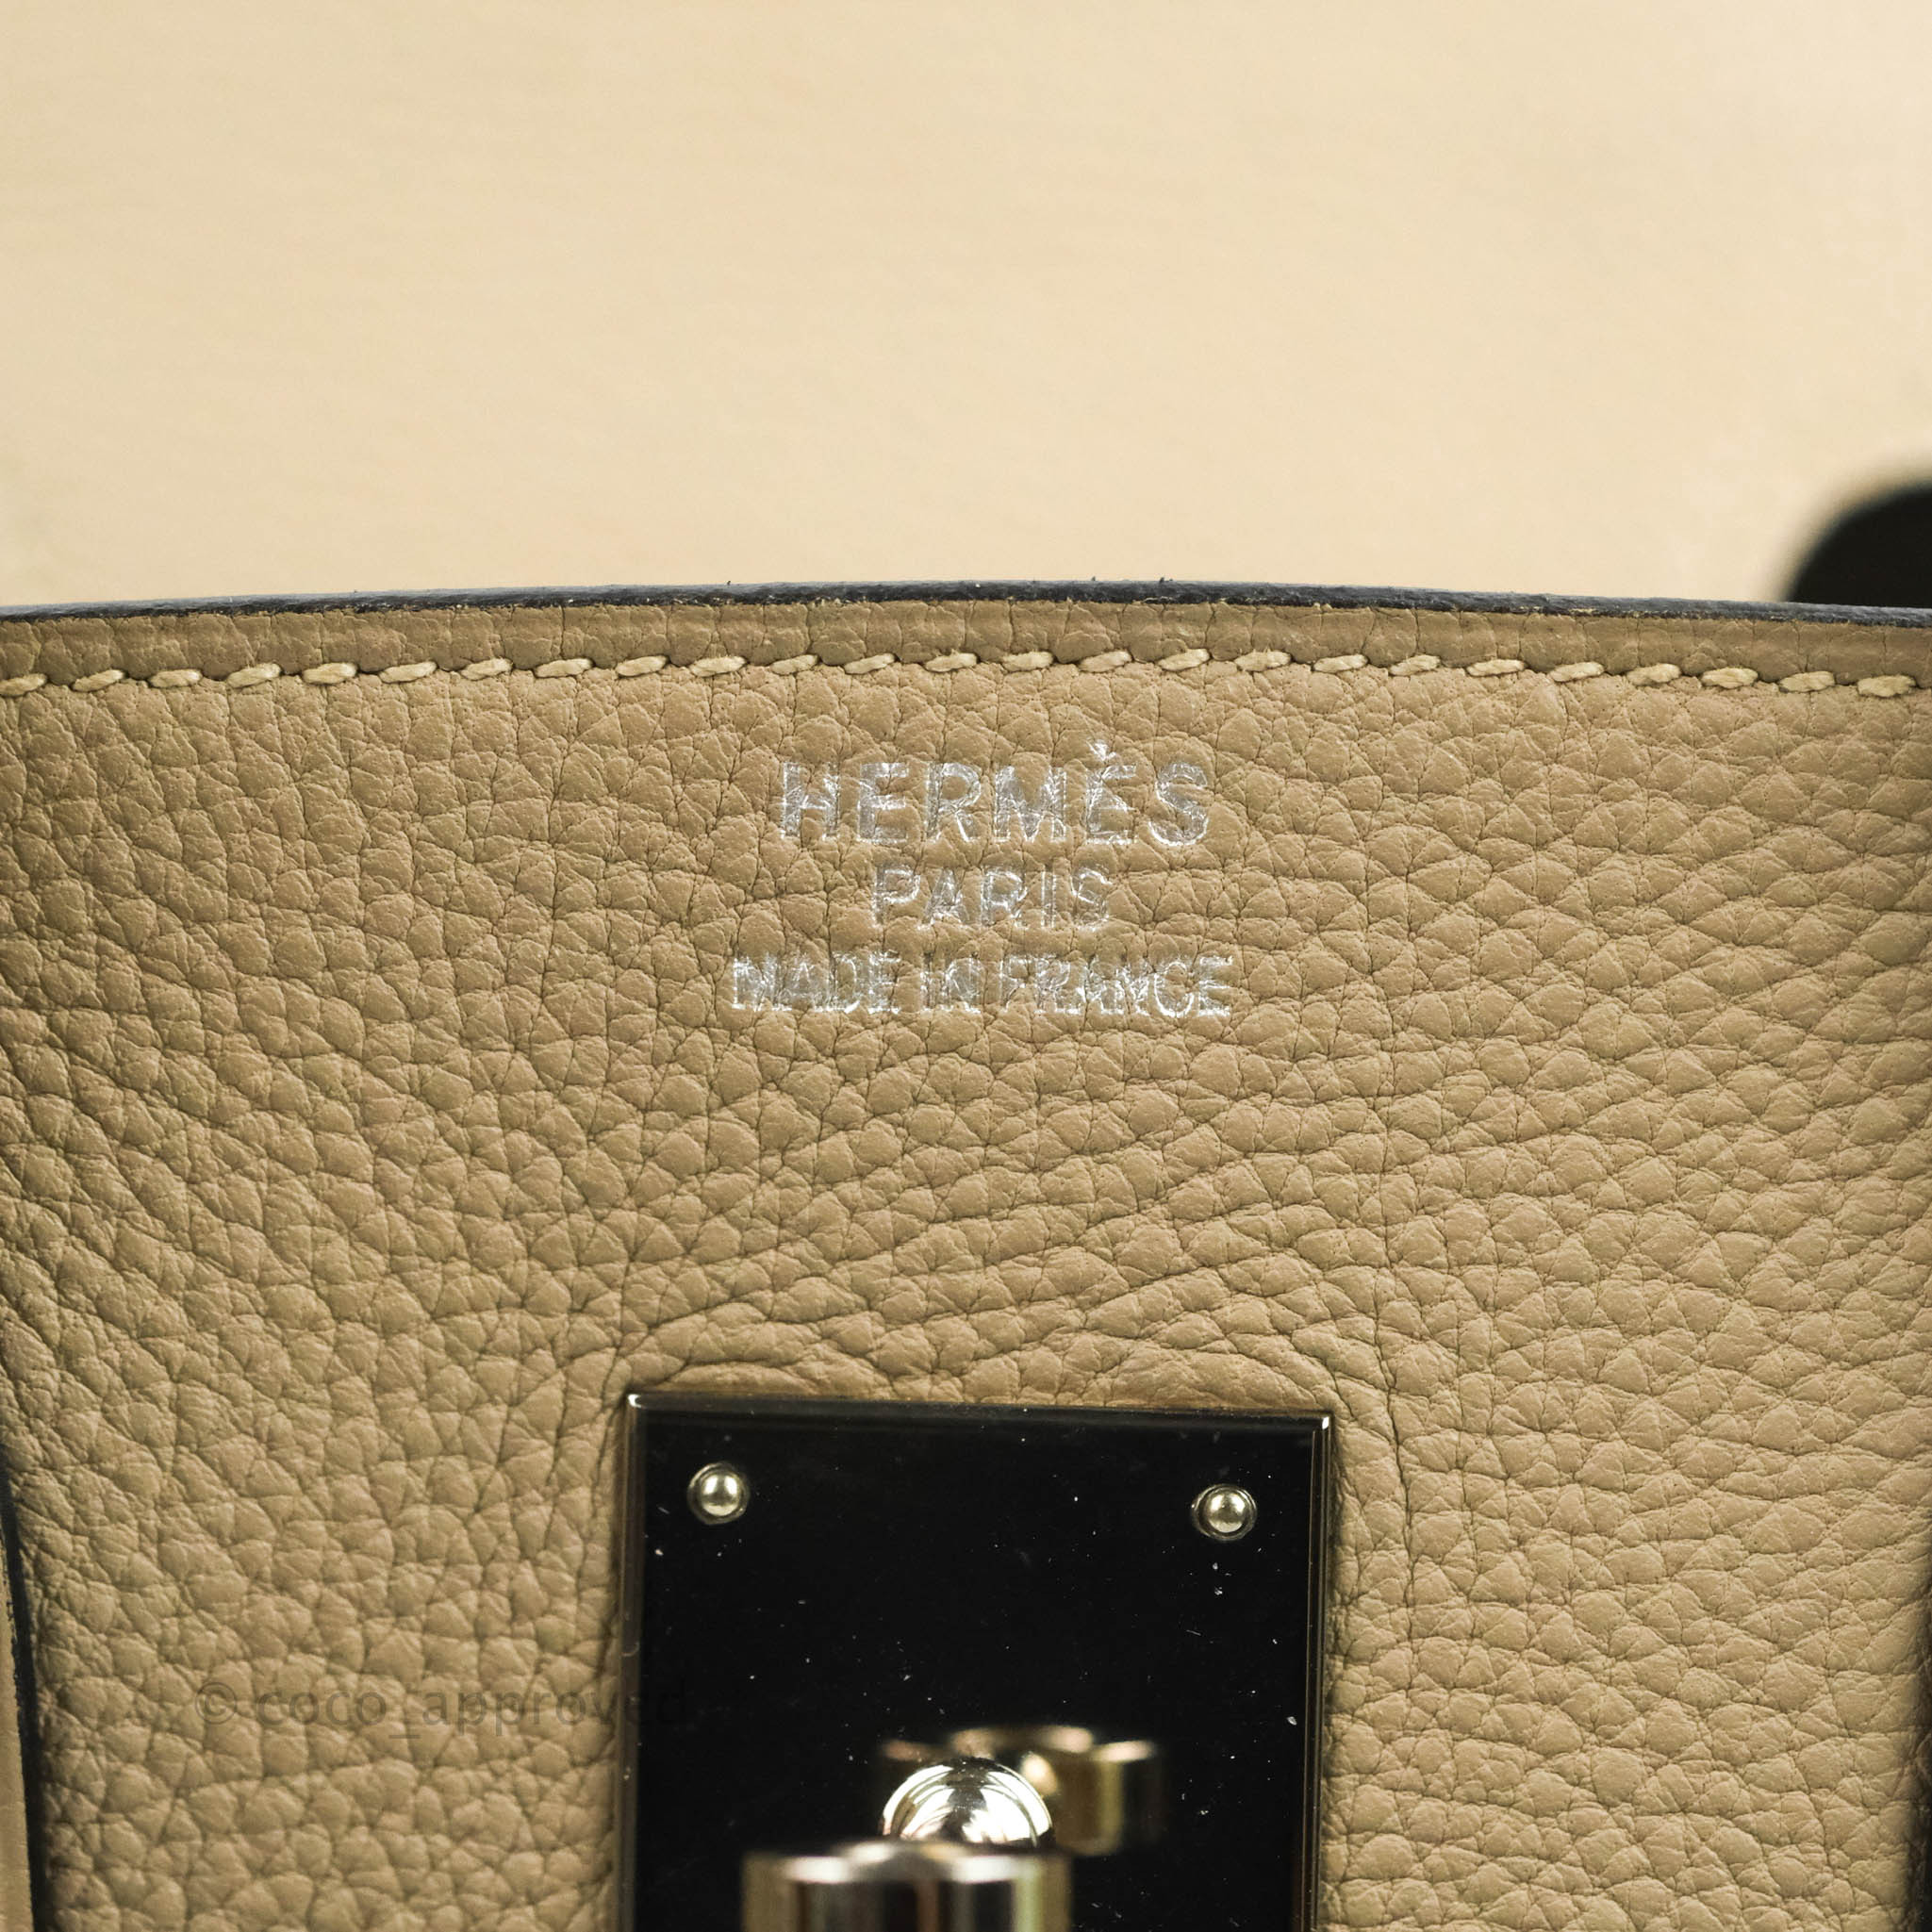 Hermès Birkin 35 Gris Tourterelle Togo with Palladium Hardware - 2009